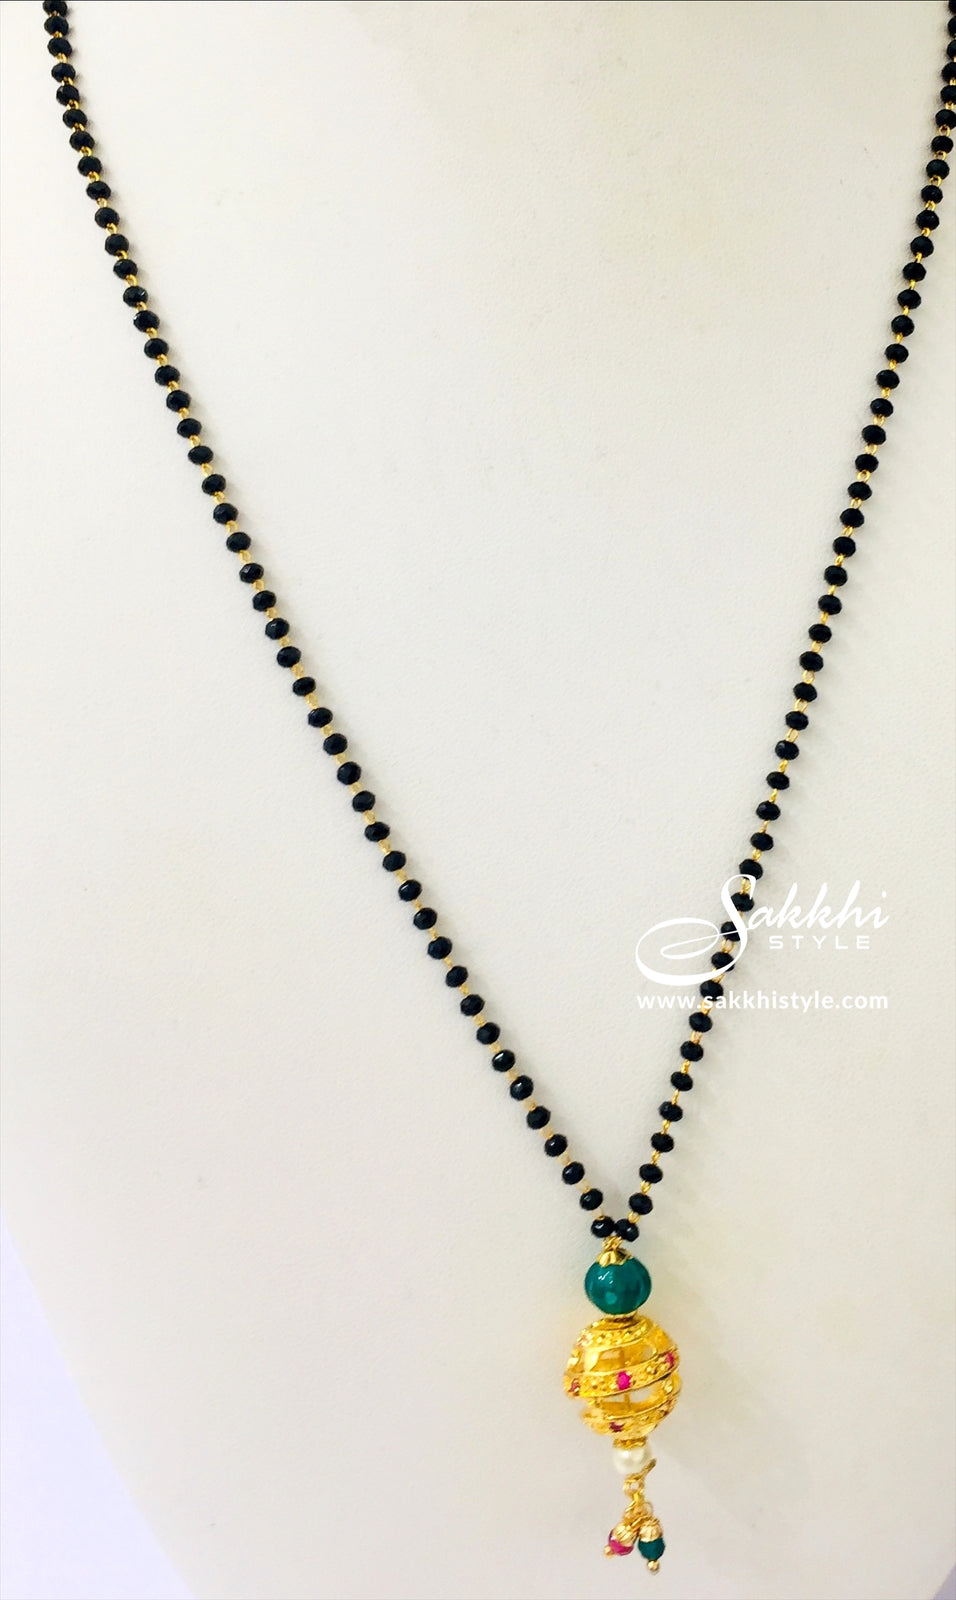 Black Beads Necklace - Sakkhi Style